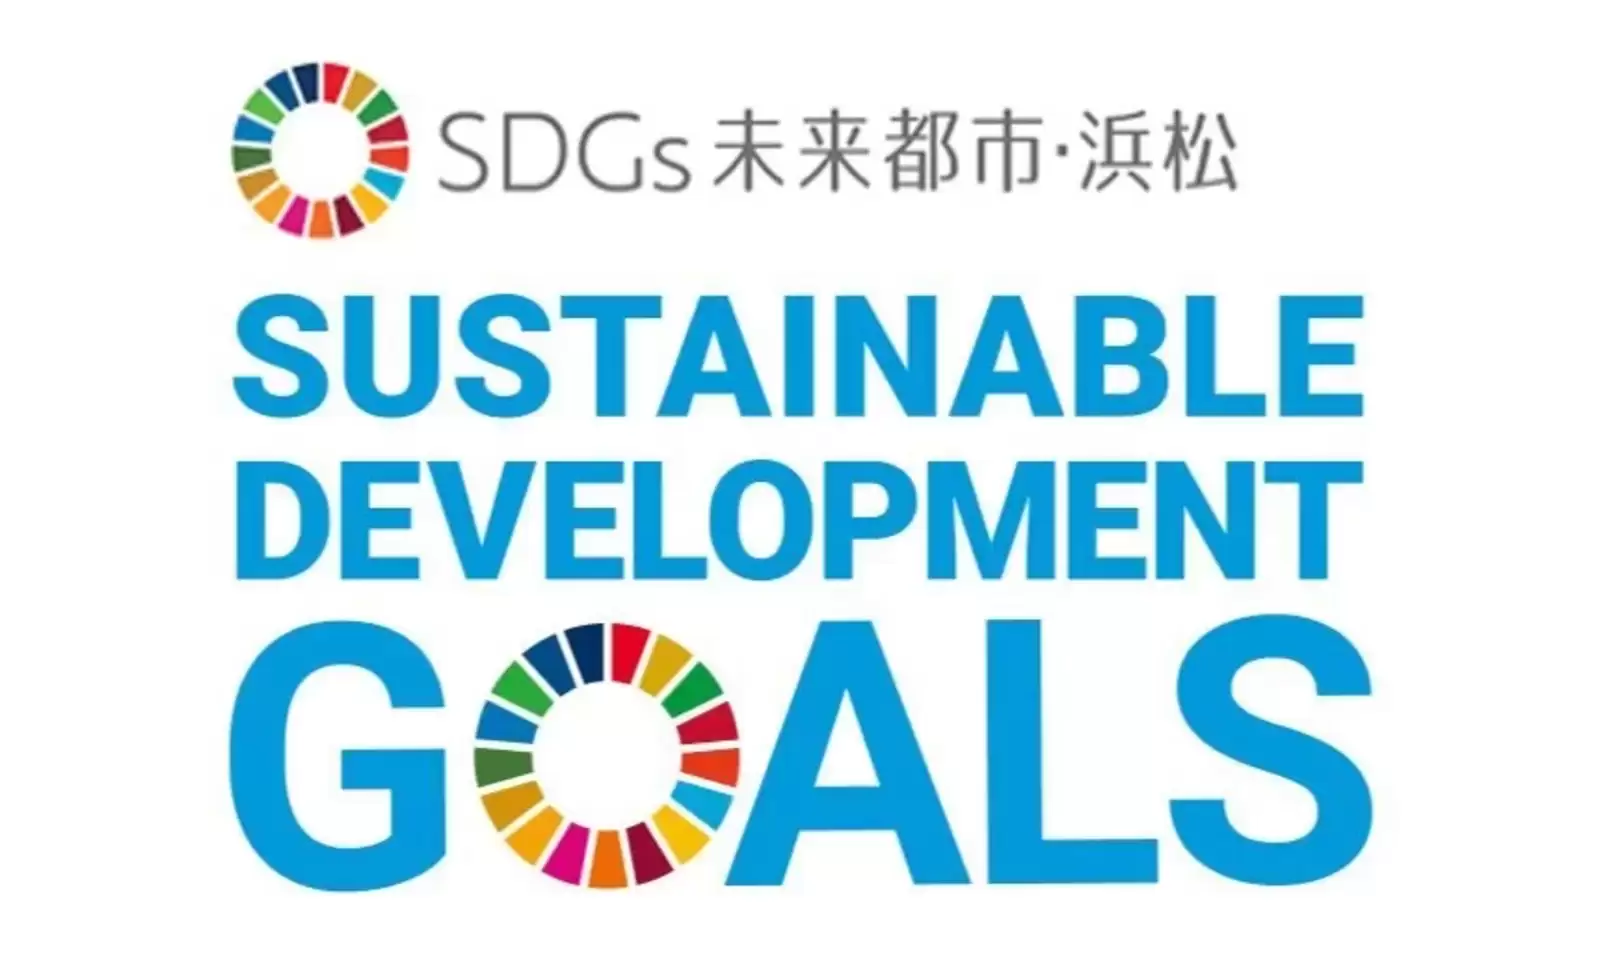 当社は浜松市におけるSDGsの達成を目指し、持続可能な社会の実現に貢献してまいります